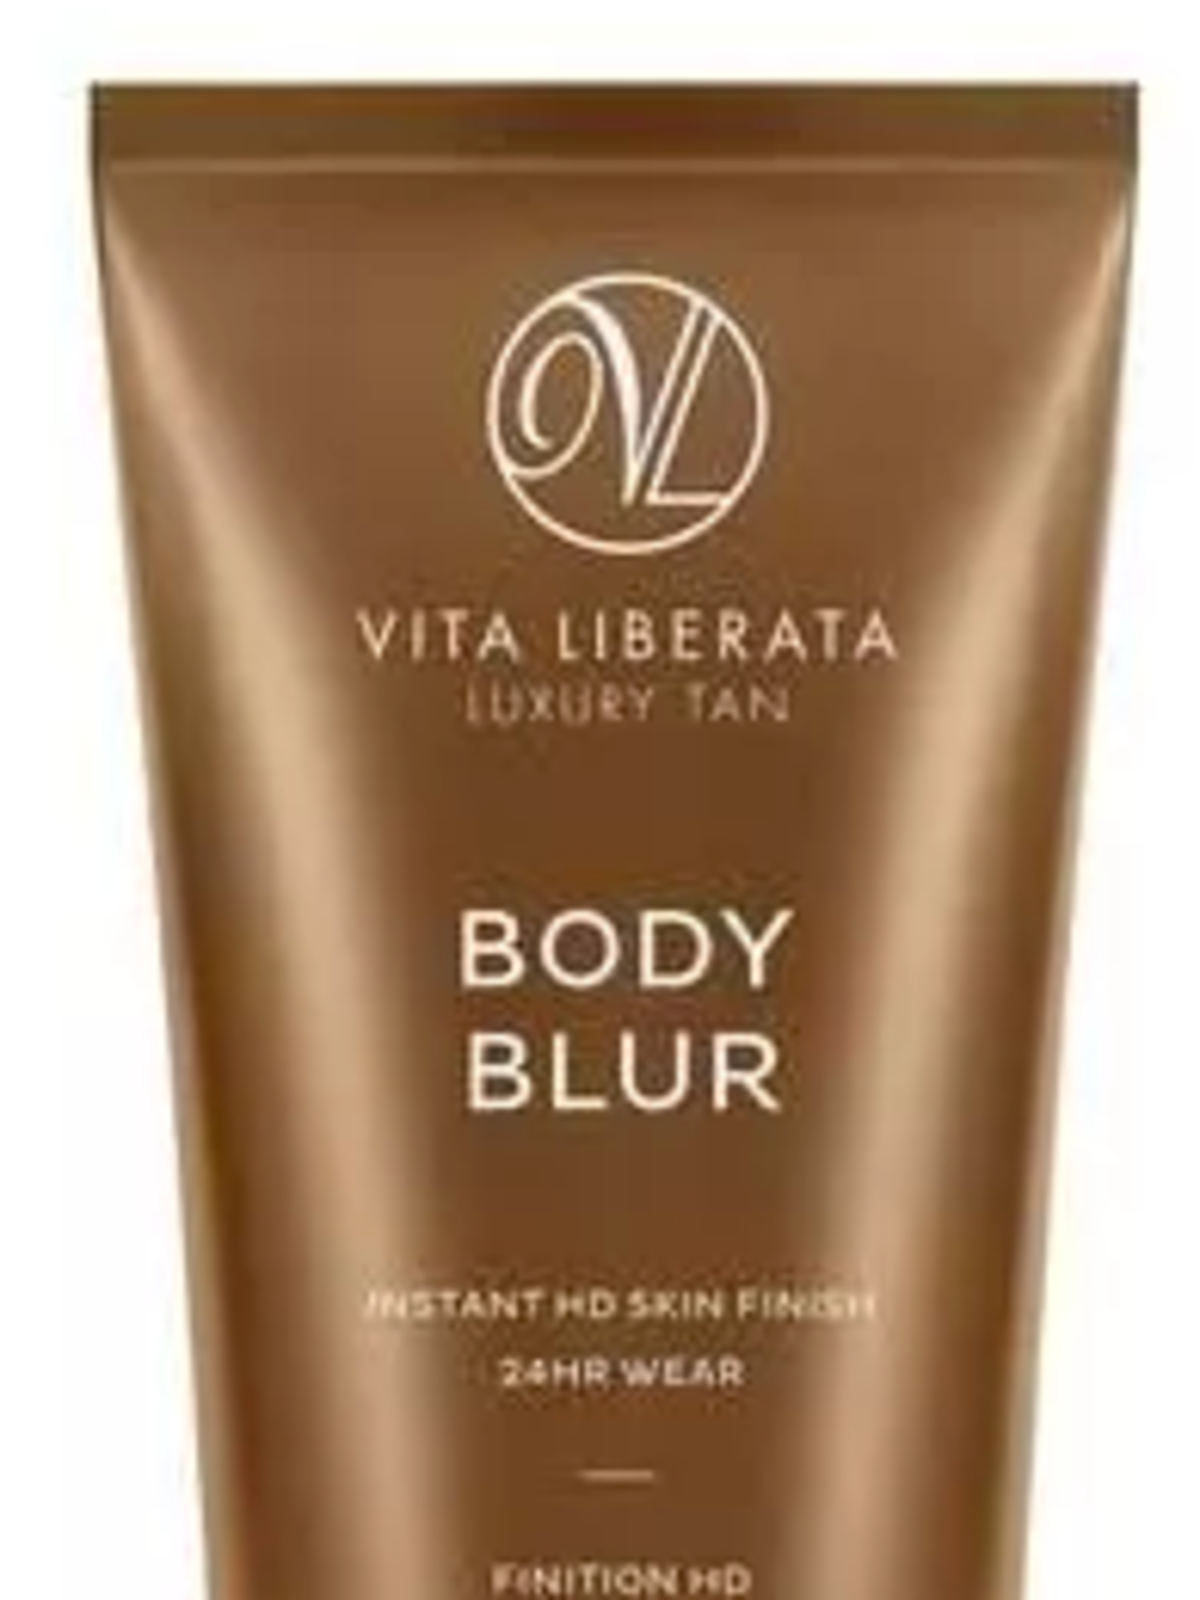 Vita Liberata, Body Blur, Instant HD Skin Finish